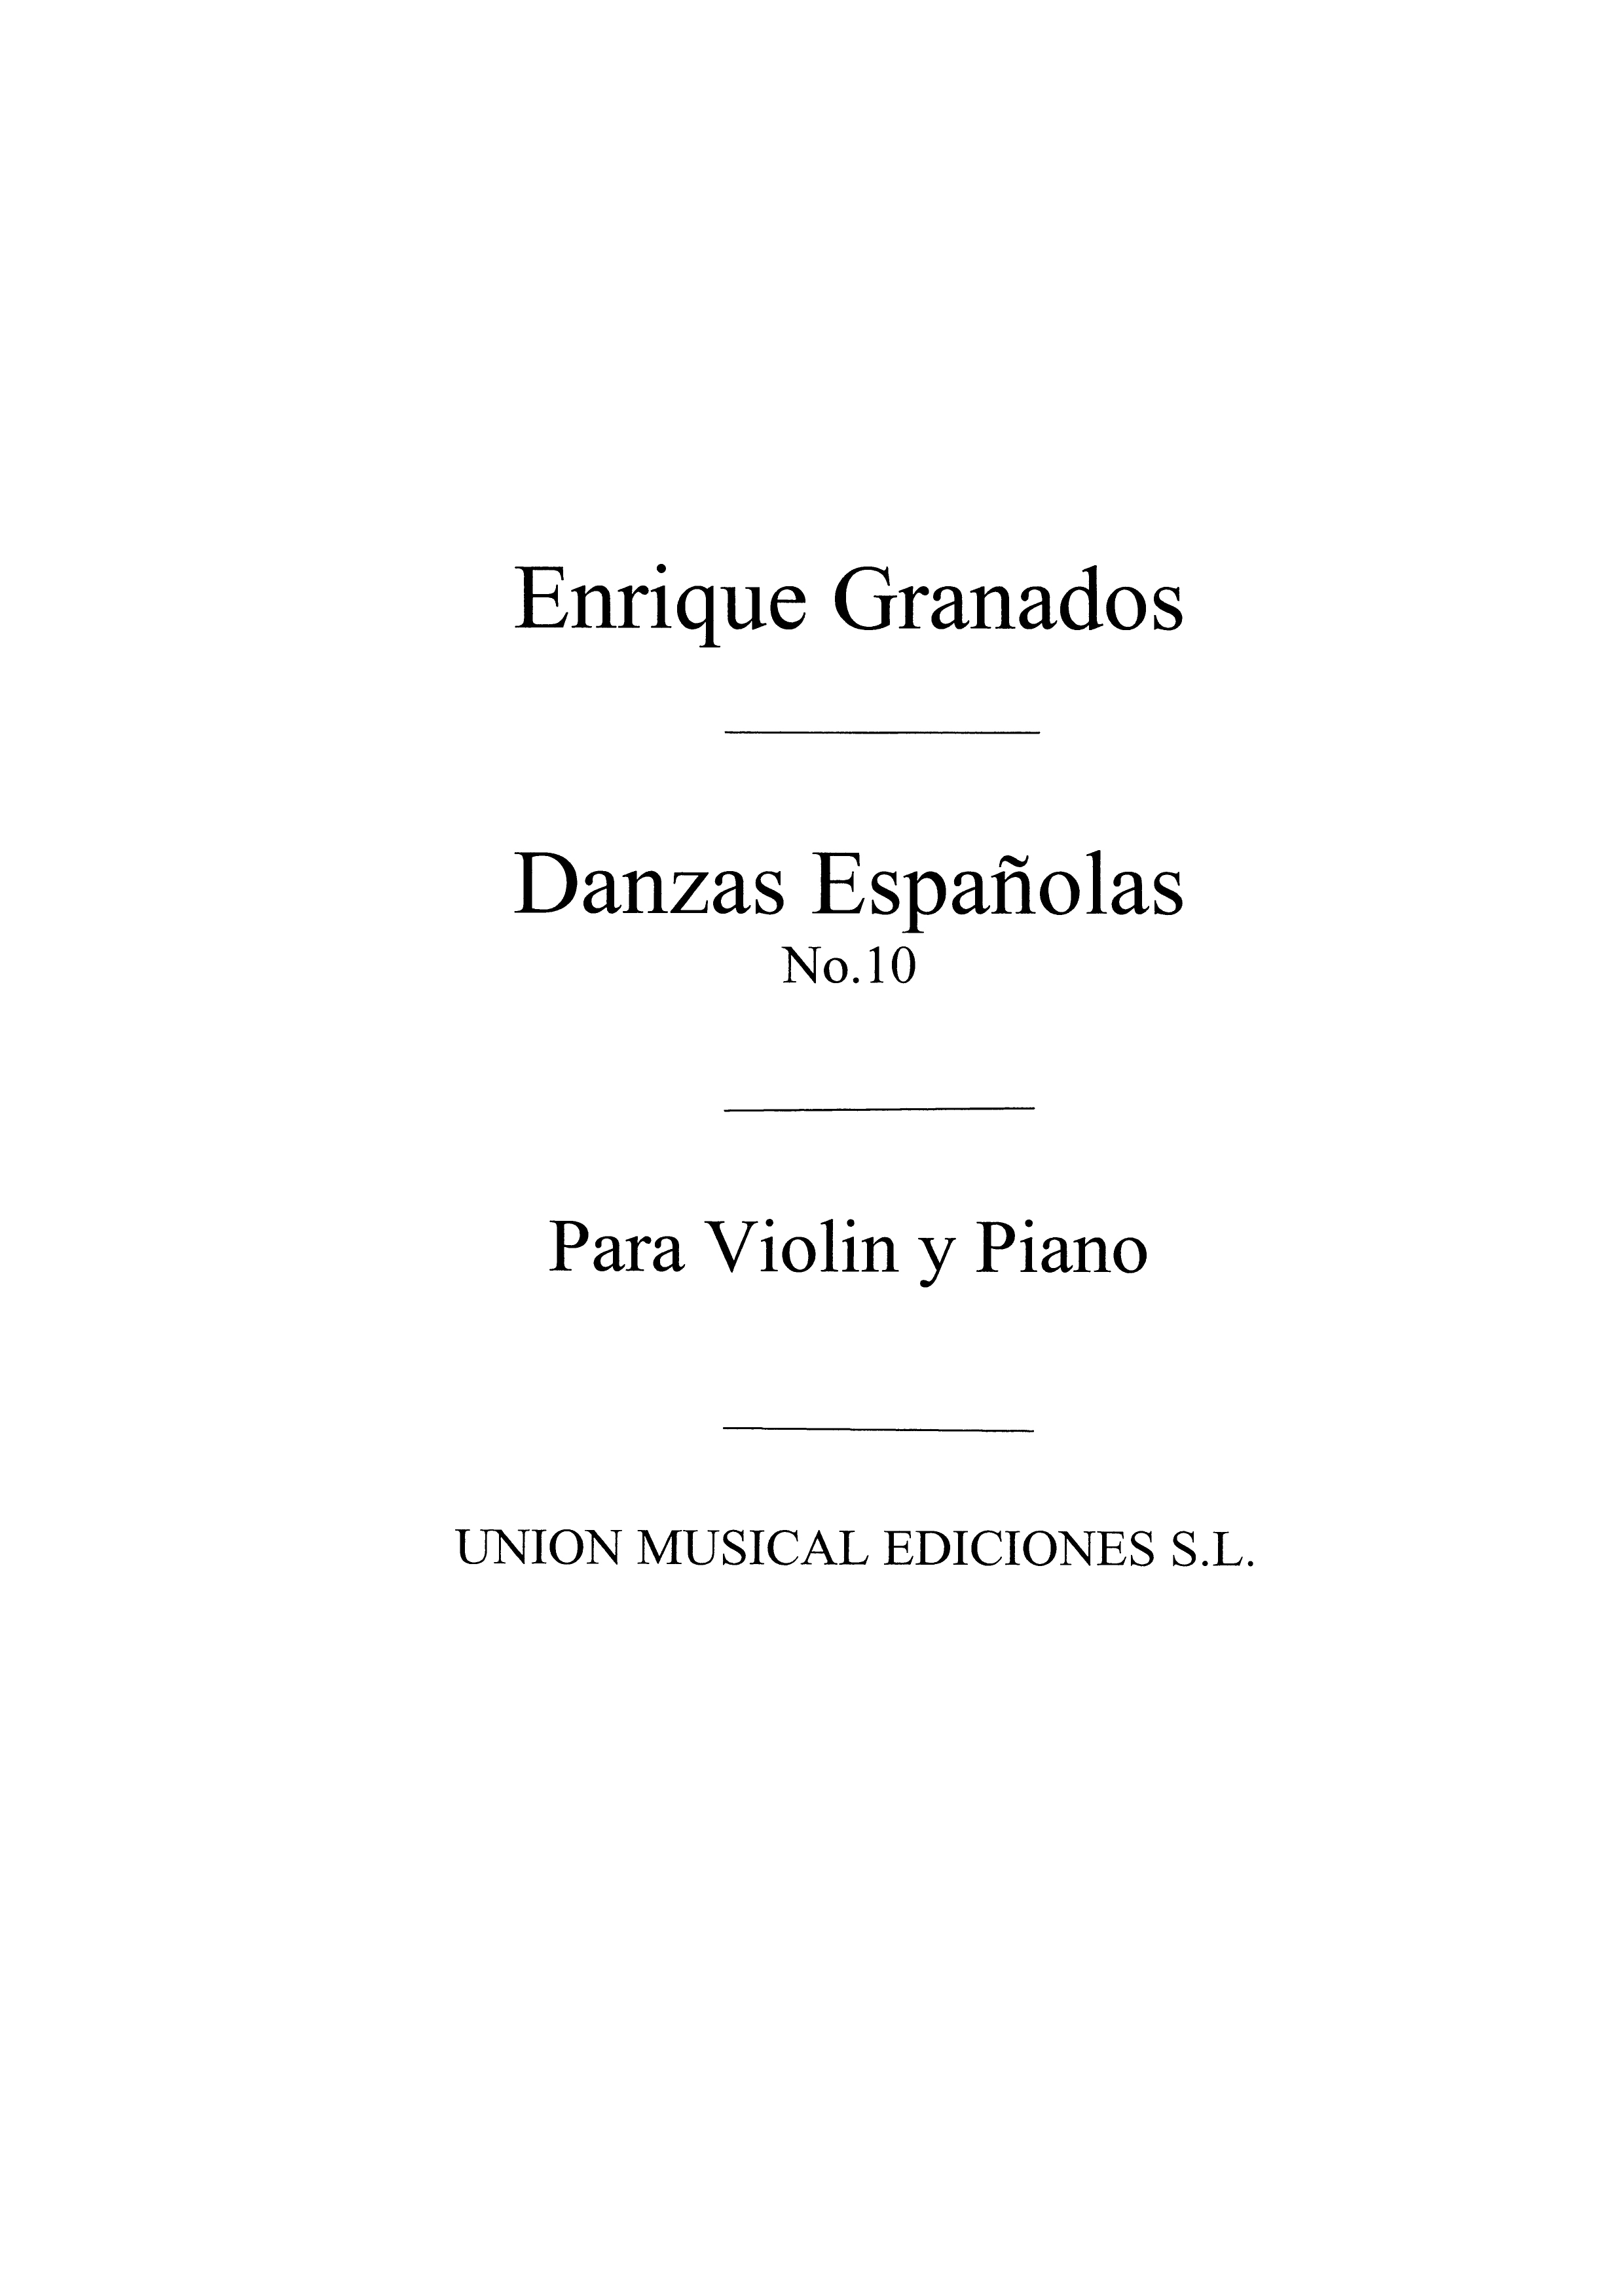 Enrique Granados: Danza Espanola No.10 Melancolica: Violin: Instrumental Work